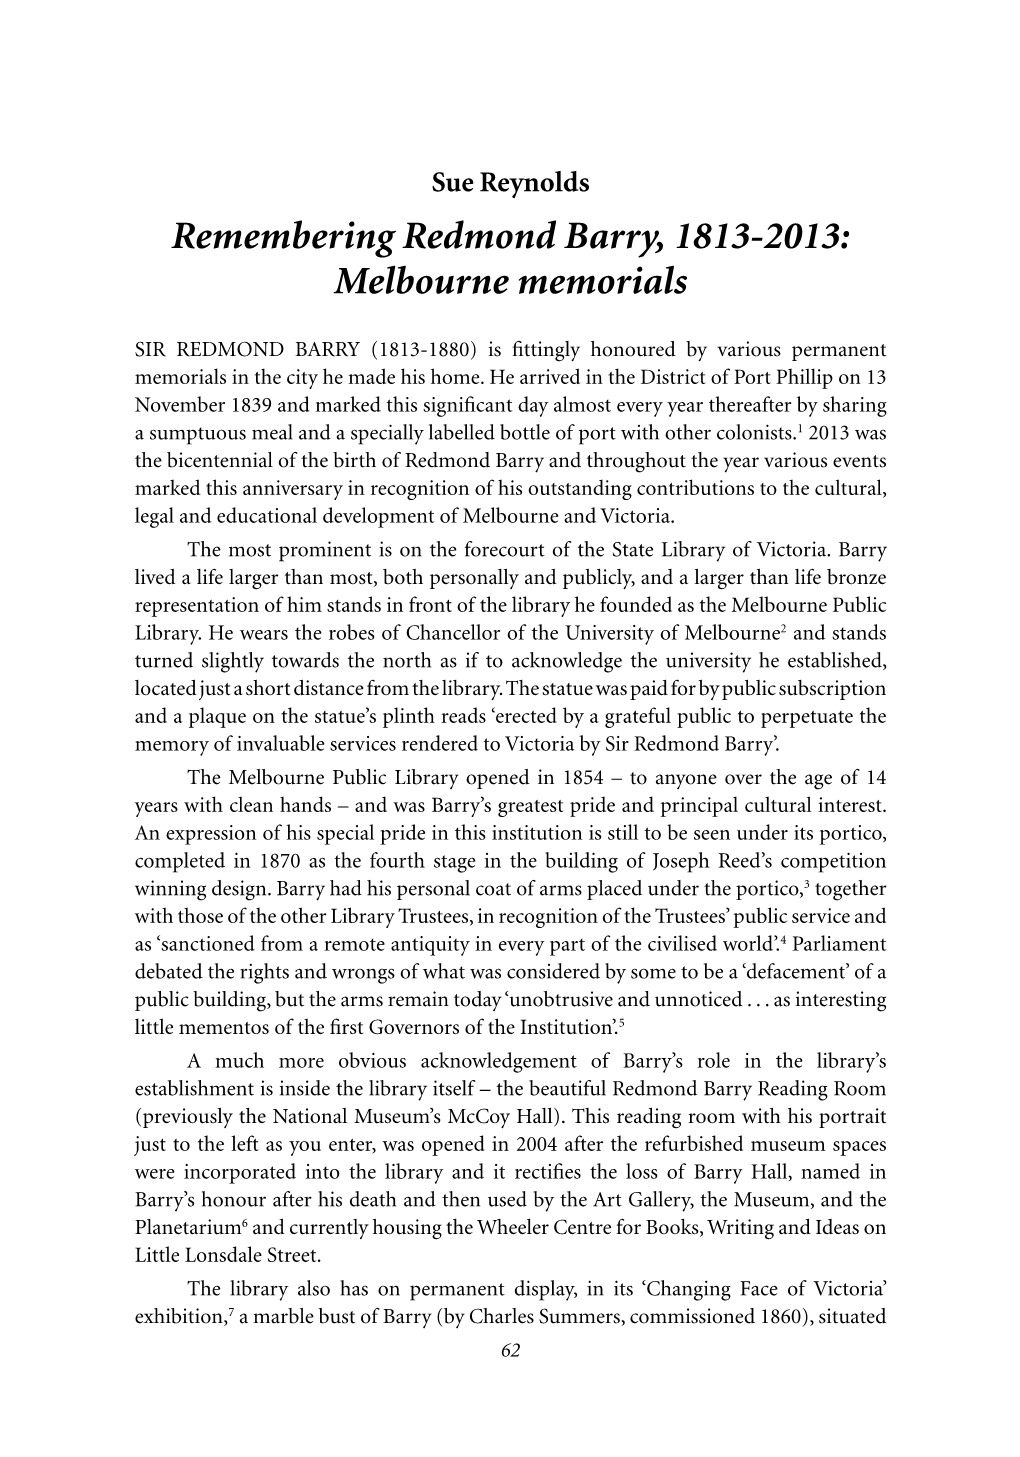 Remembering Redmond Barry, 1813-2013: Melbourne Memorials